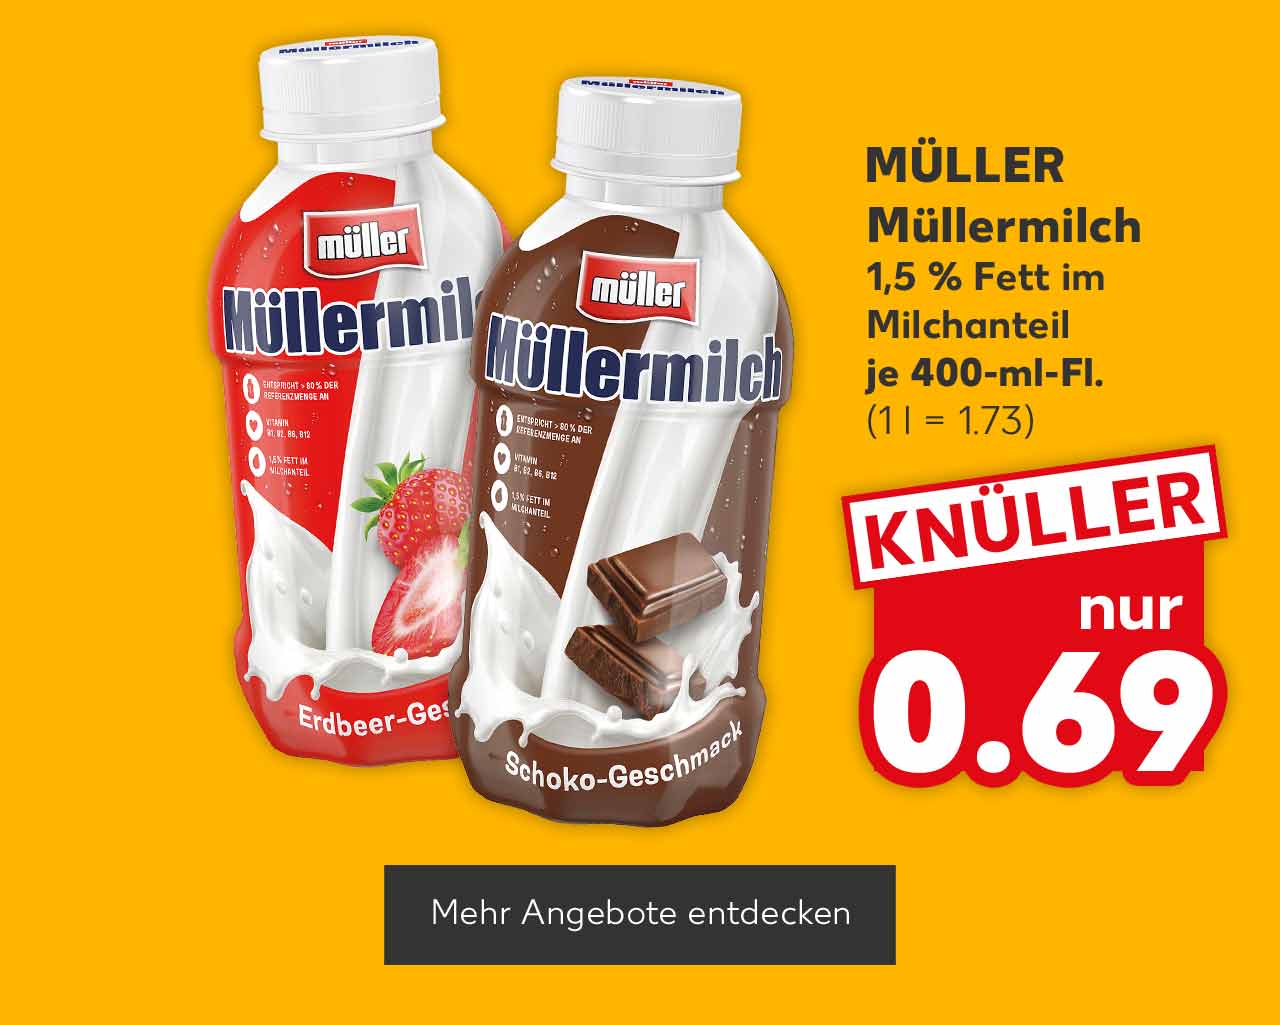 MÜLLER Müllermilch, versch. Sorten, 1,5 % Fett im Milchanteil, je 400-ml-Fl. für 0.69 Euro (1 l = 1.73); Button: Mehr Angebote entdecken